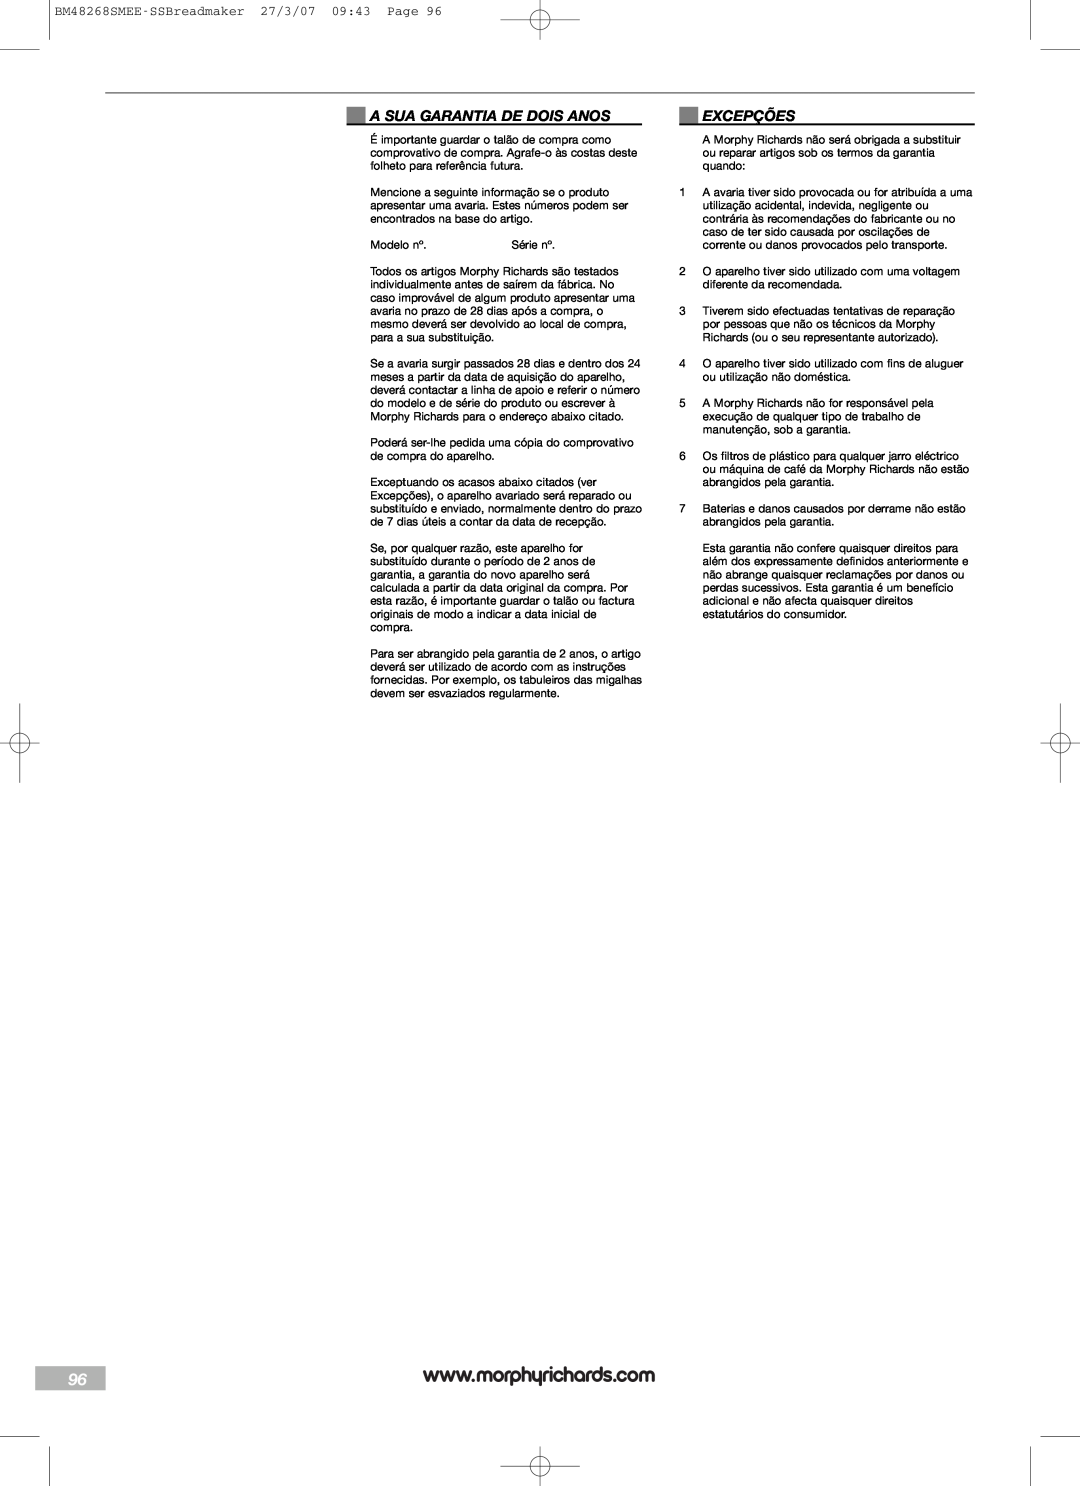 Morphy Richards manual A Sua Garantia De Dois Anos, Excepções, BM48268SMEE-SSBreadmaker27/3/07 09:43 Page 